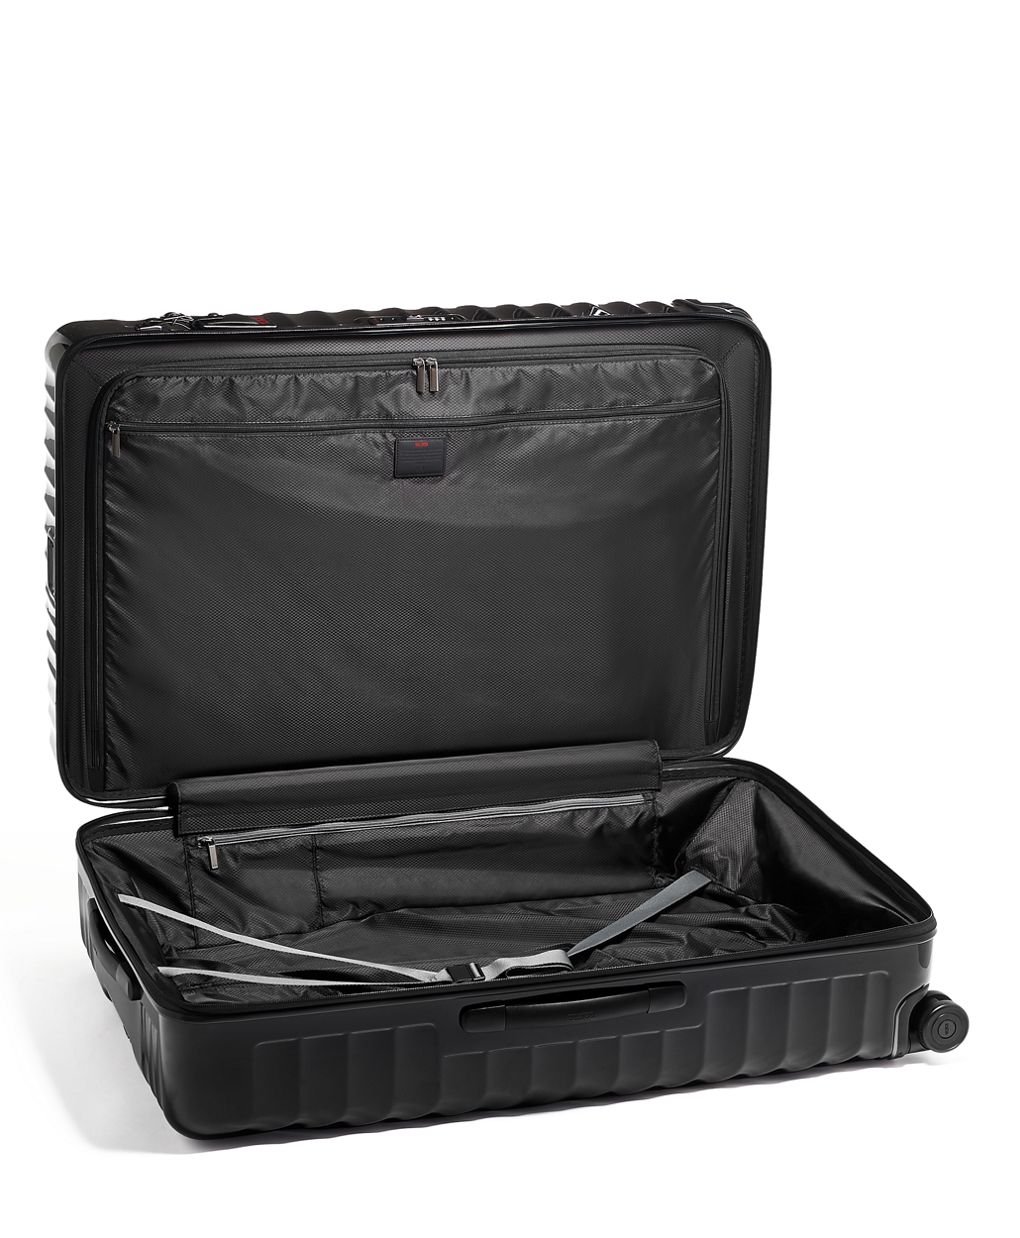 Wheeled wonder: Louis Vuitton's new four-wheeled suitcase TR4